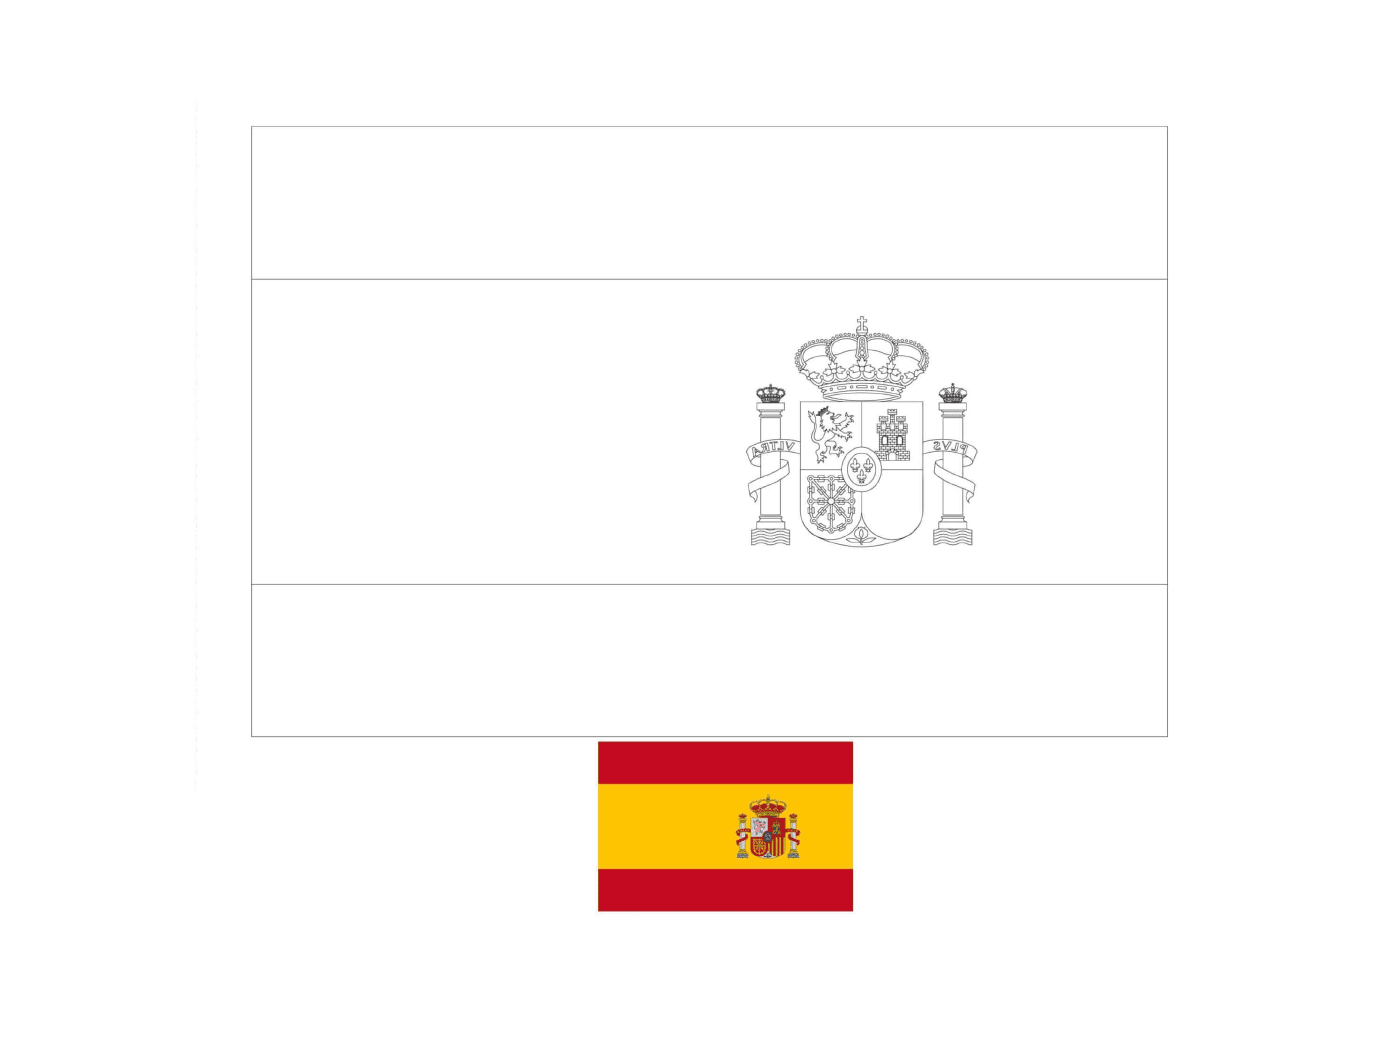  Bandeira da Espanha desenhada com cores 